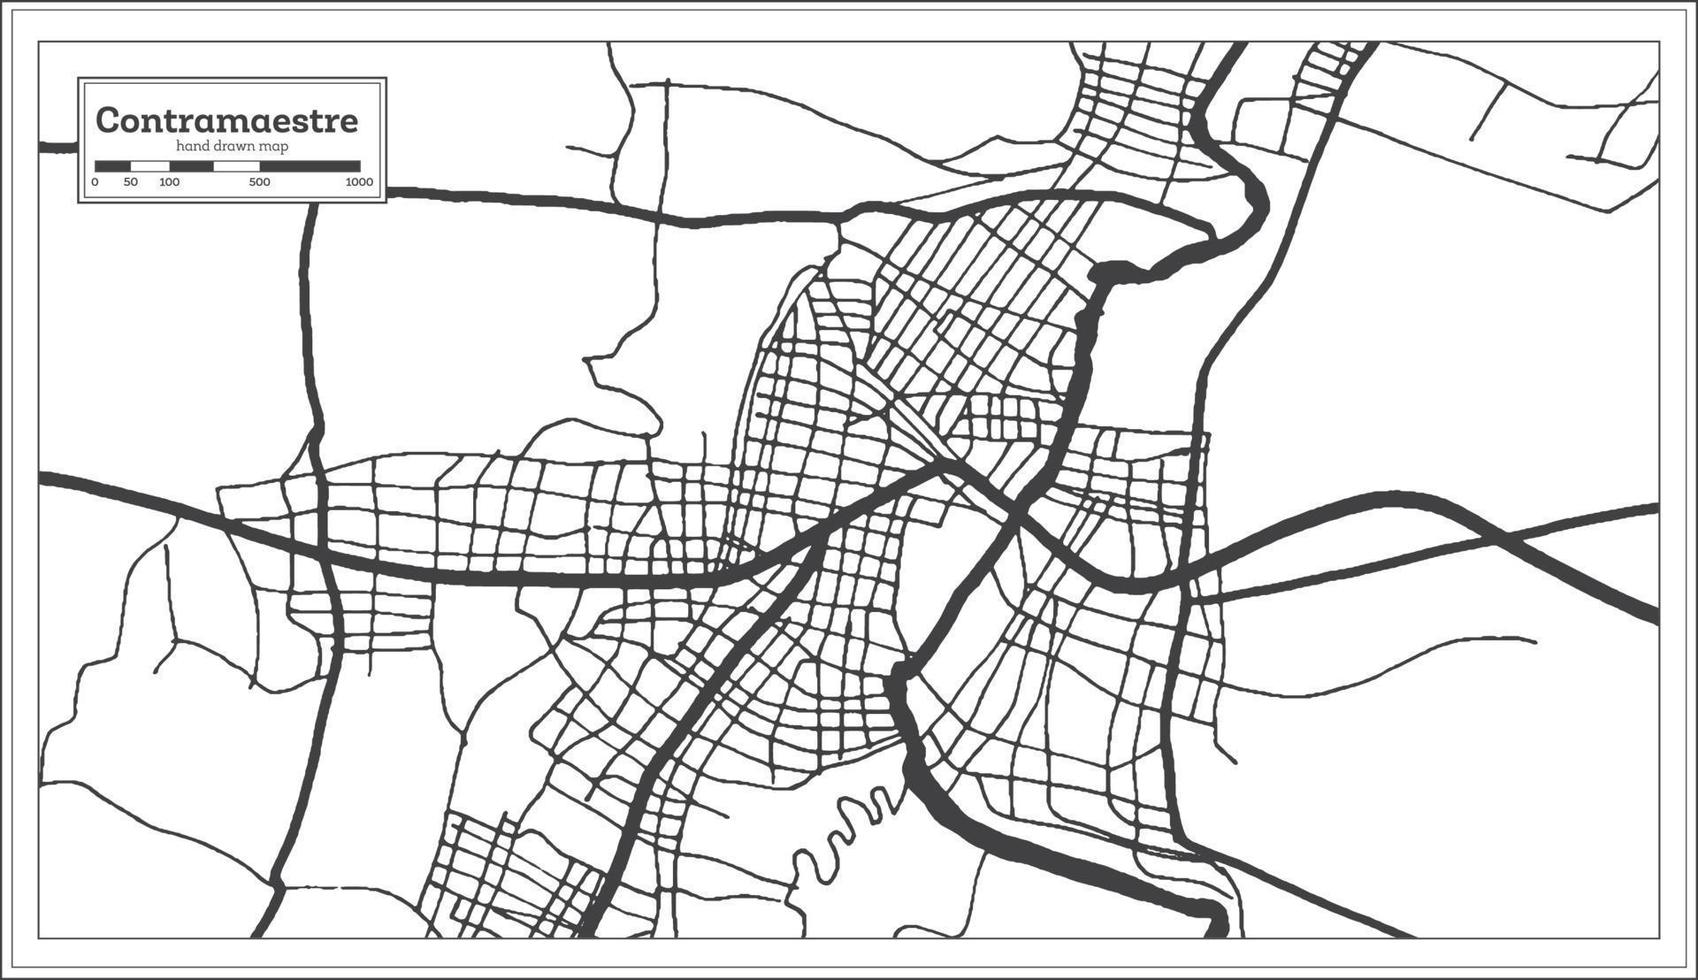 contramaestre plan de la ville de cuba en noir et blanc dans un style rétro. carte muette. vecteur